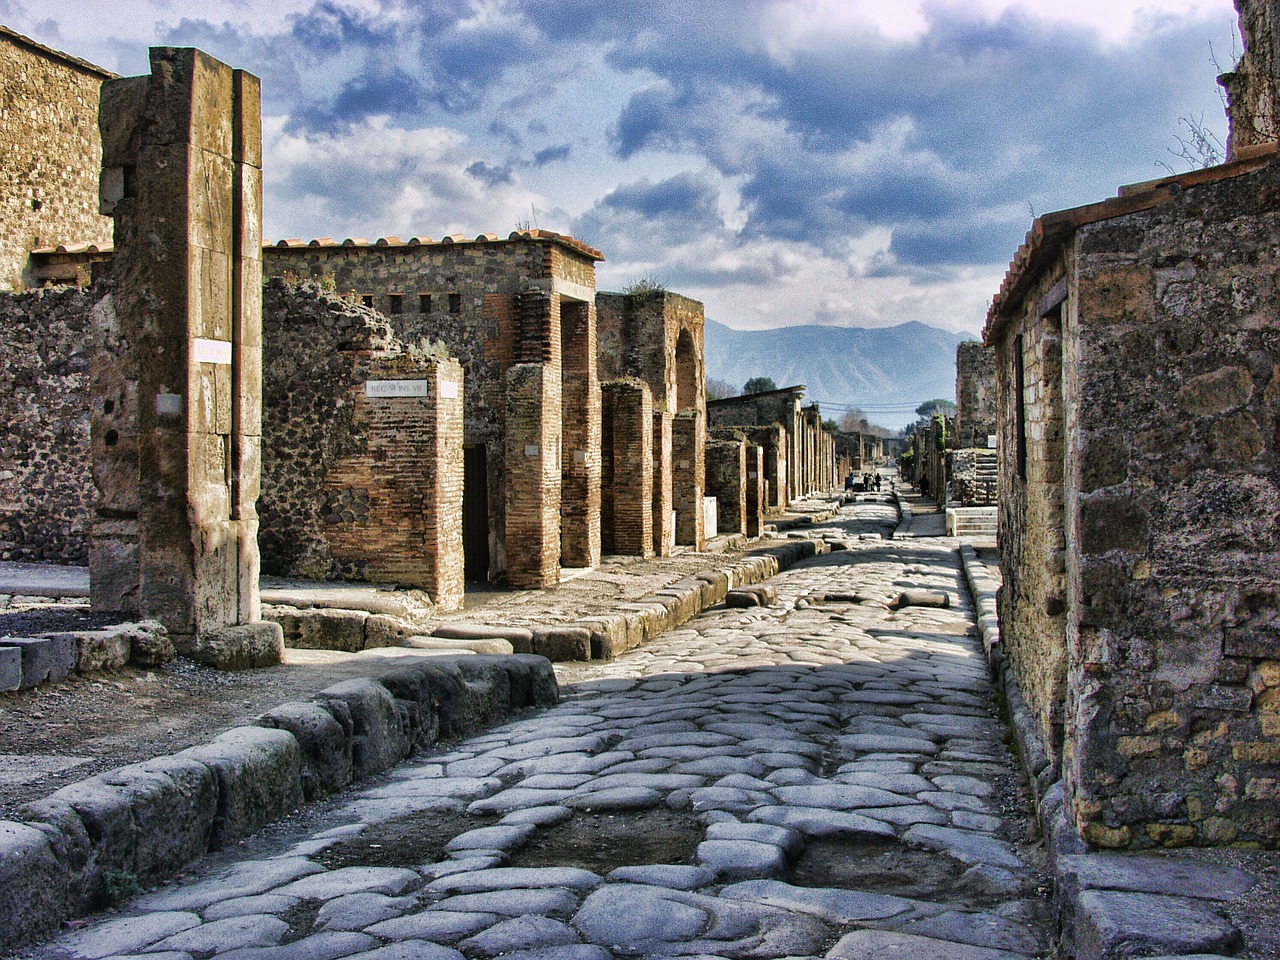 A street in Pompeii (Credit: Graham-H, pixabay.com)